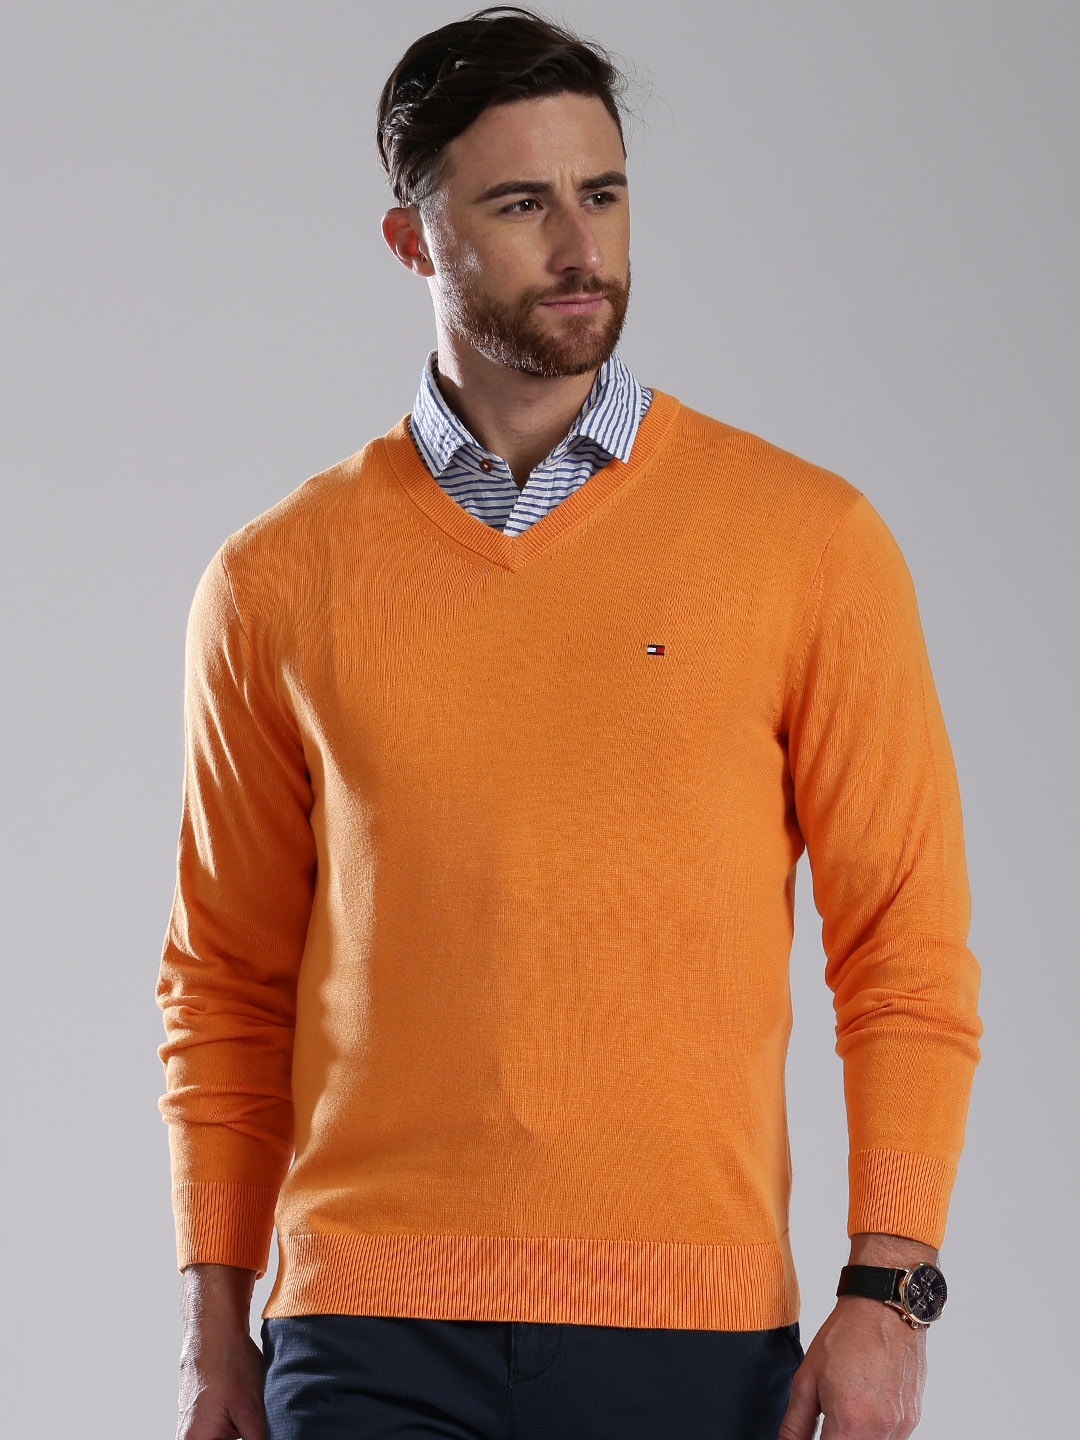 tommy hilfiger sweater orange